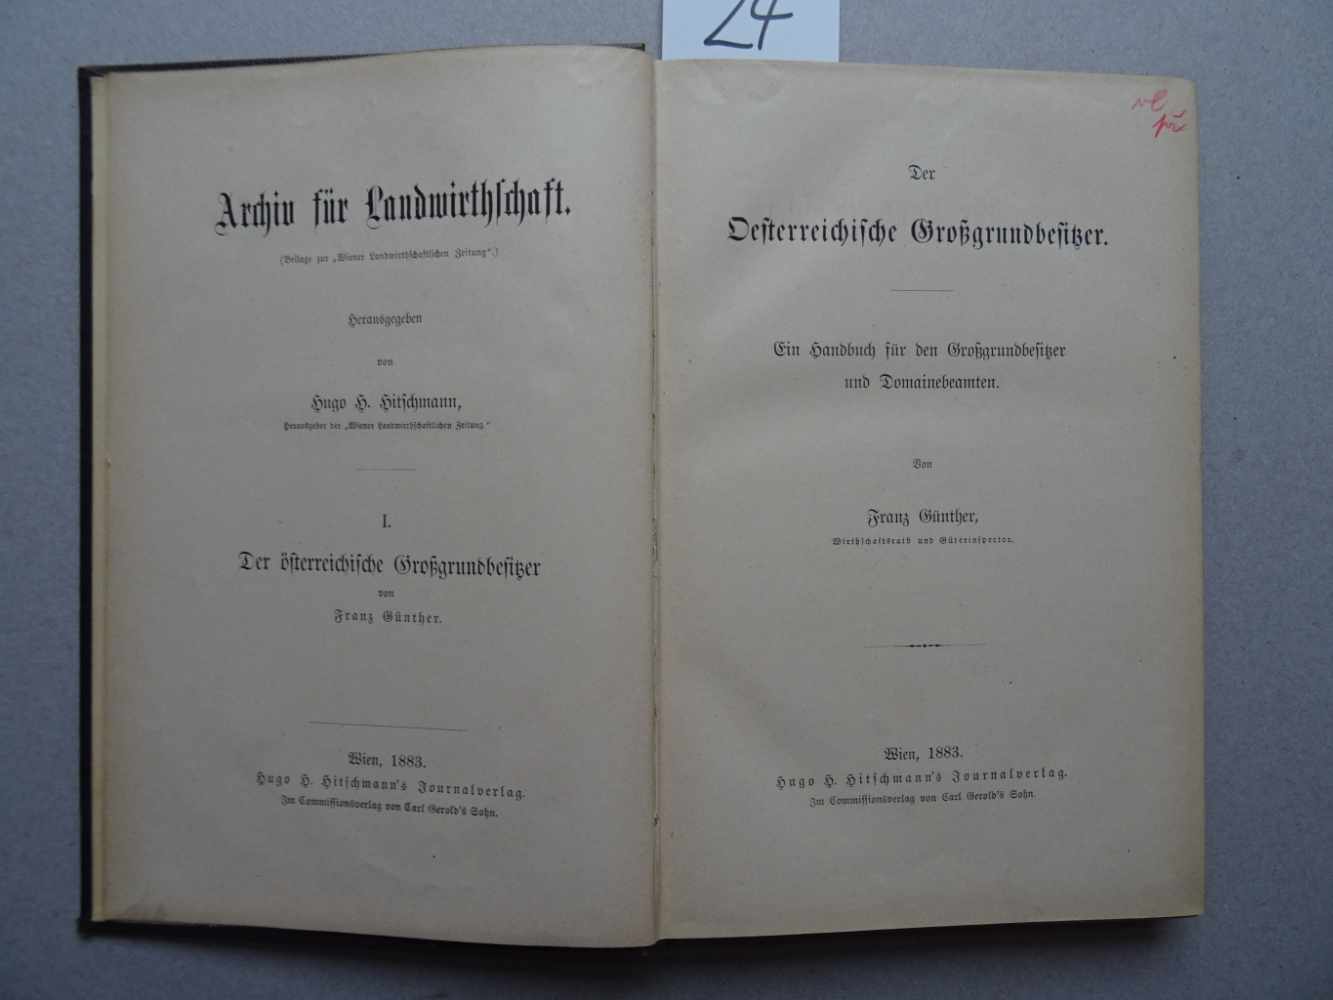 Günther, F.Der Oesterreichische Großgrundbesitzer. Ein Handbuch für den Großgrundbesitzer und